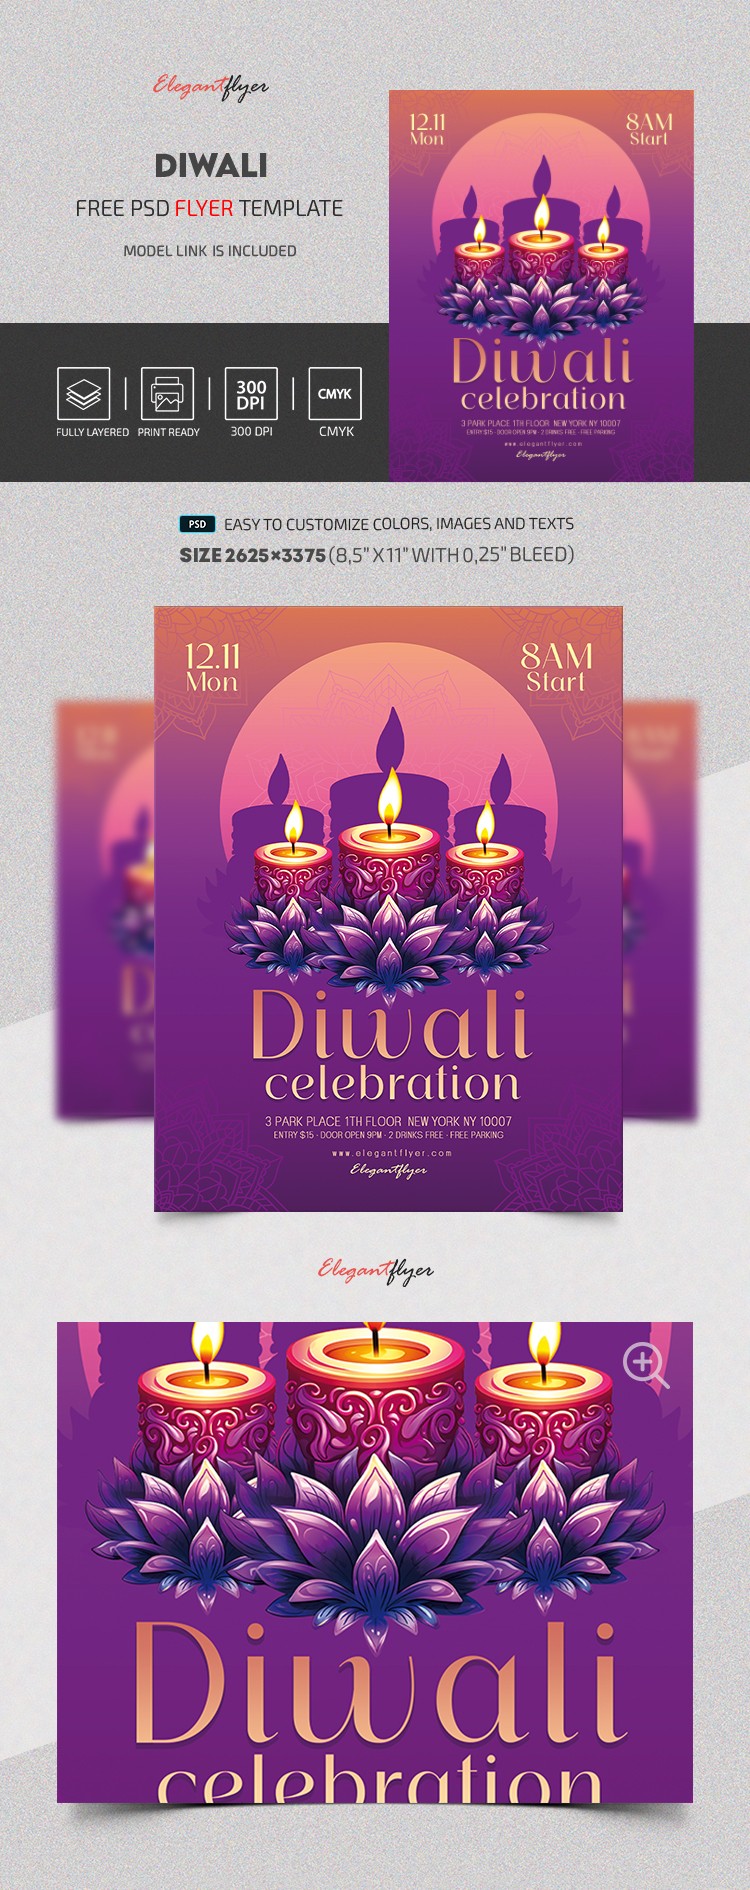 Célébration de Diwali by ElegantFlyer